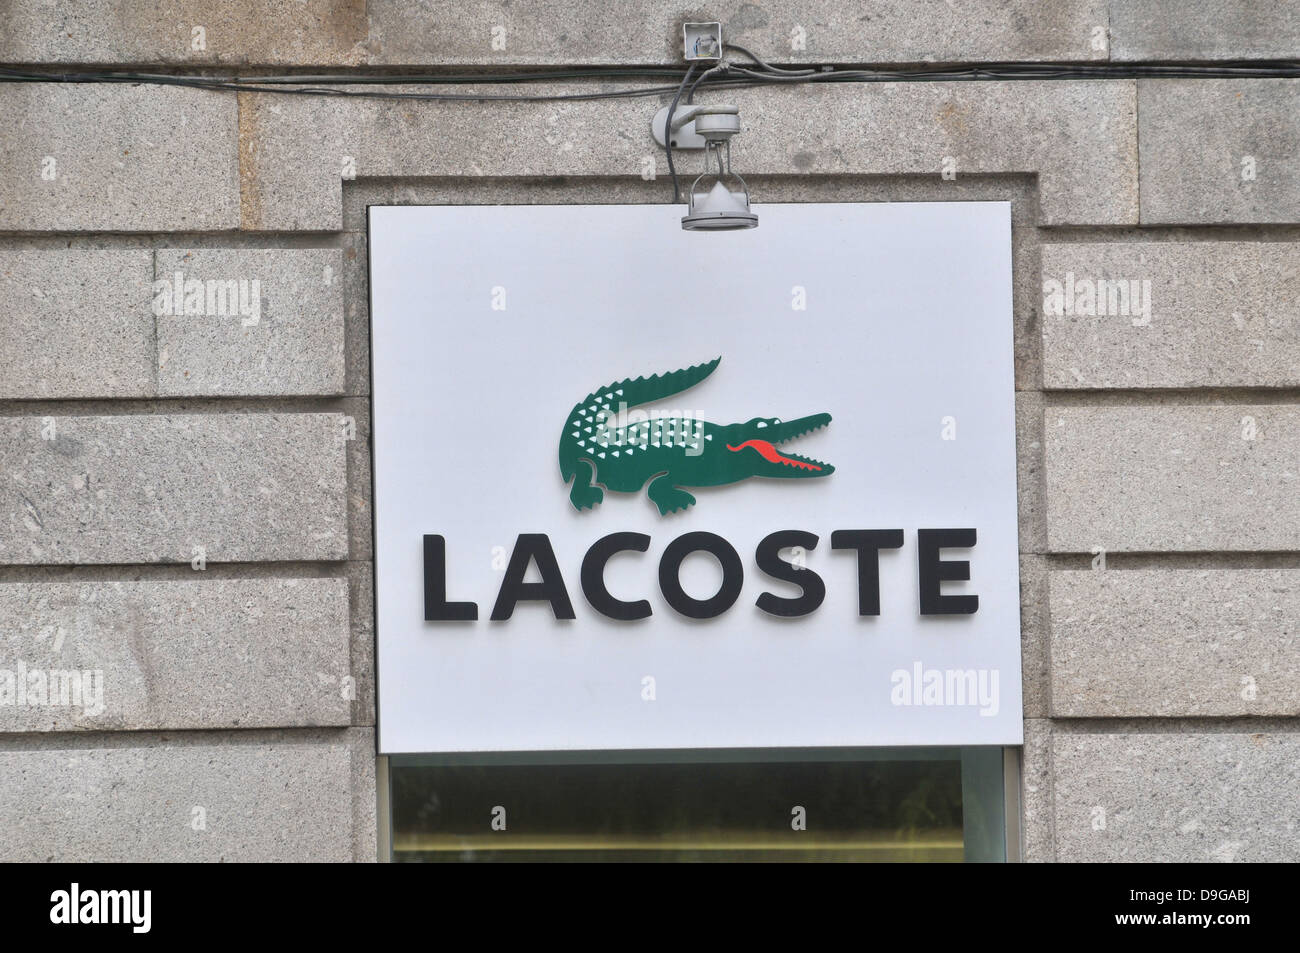 Lacoste logo sign crocodile on facade of store Braga Portugal Stock ...